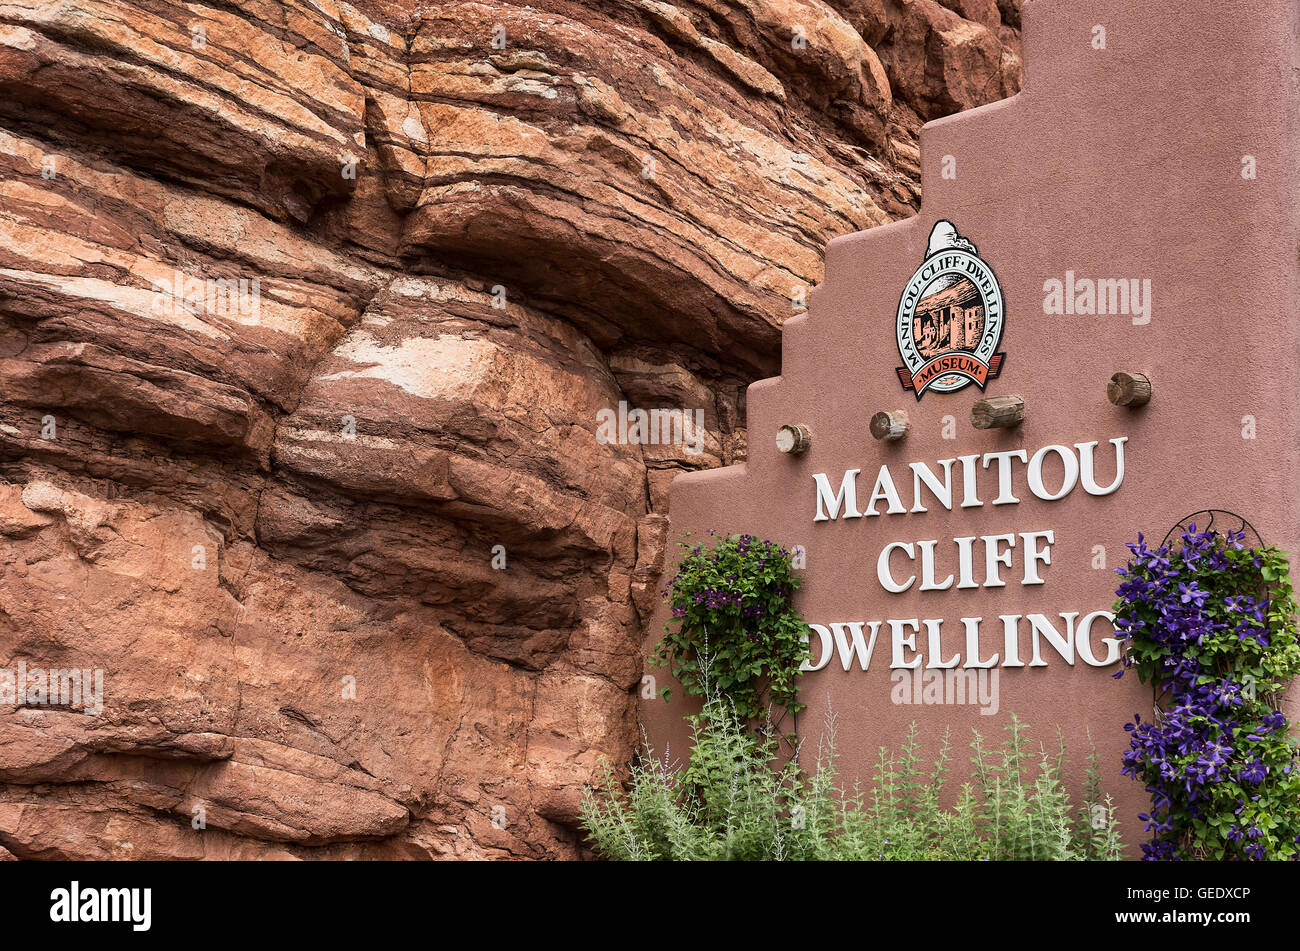 Manitou Cliff Dwellings der Anasazi Indianer Indianerstamm. Diese Wohnungen wurden aus dem weichen roten Sandstein gehauen. Stockfoto